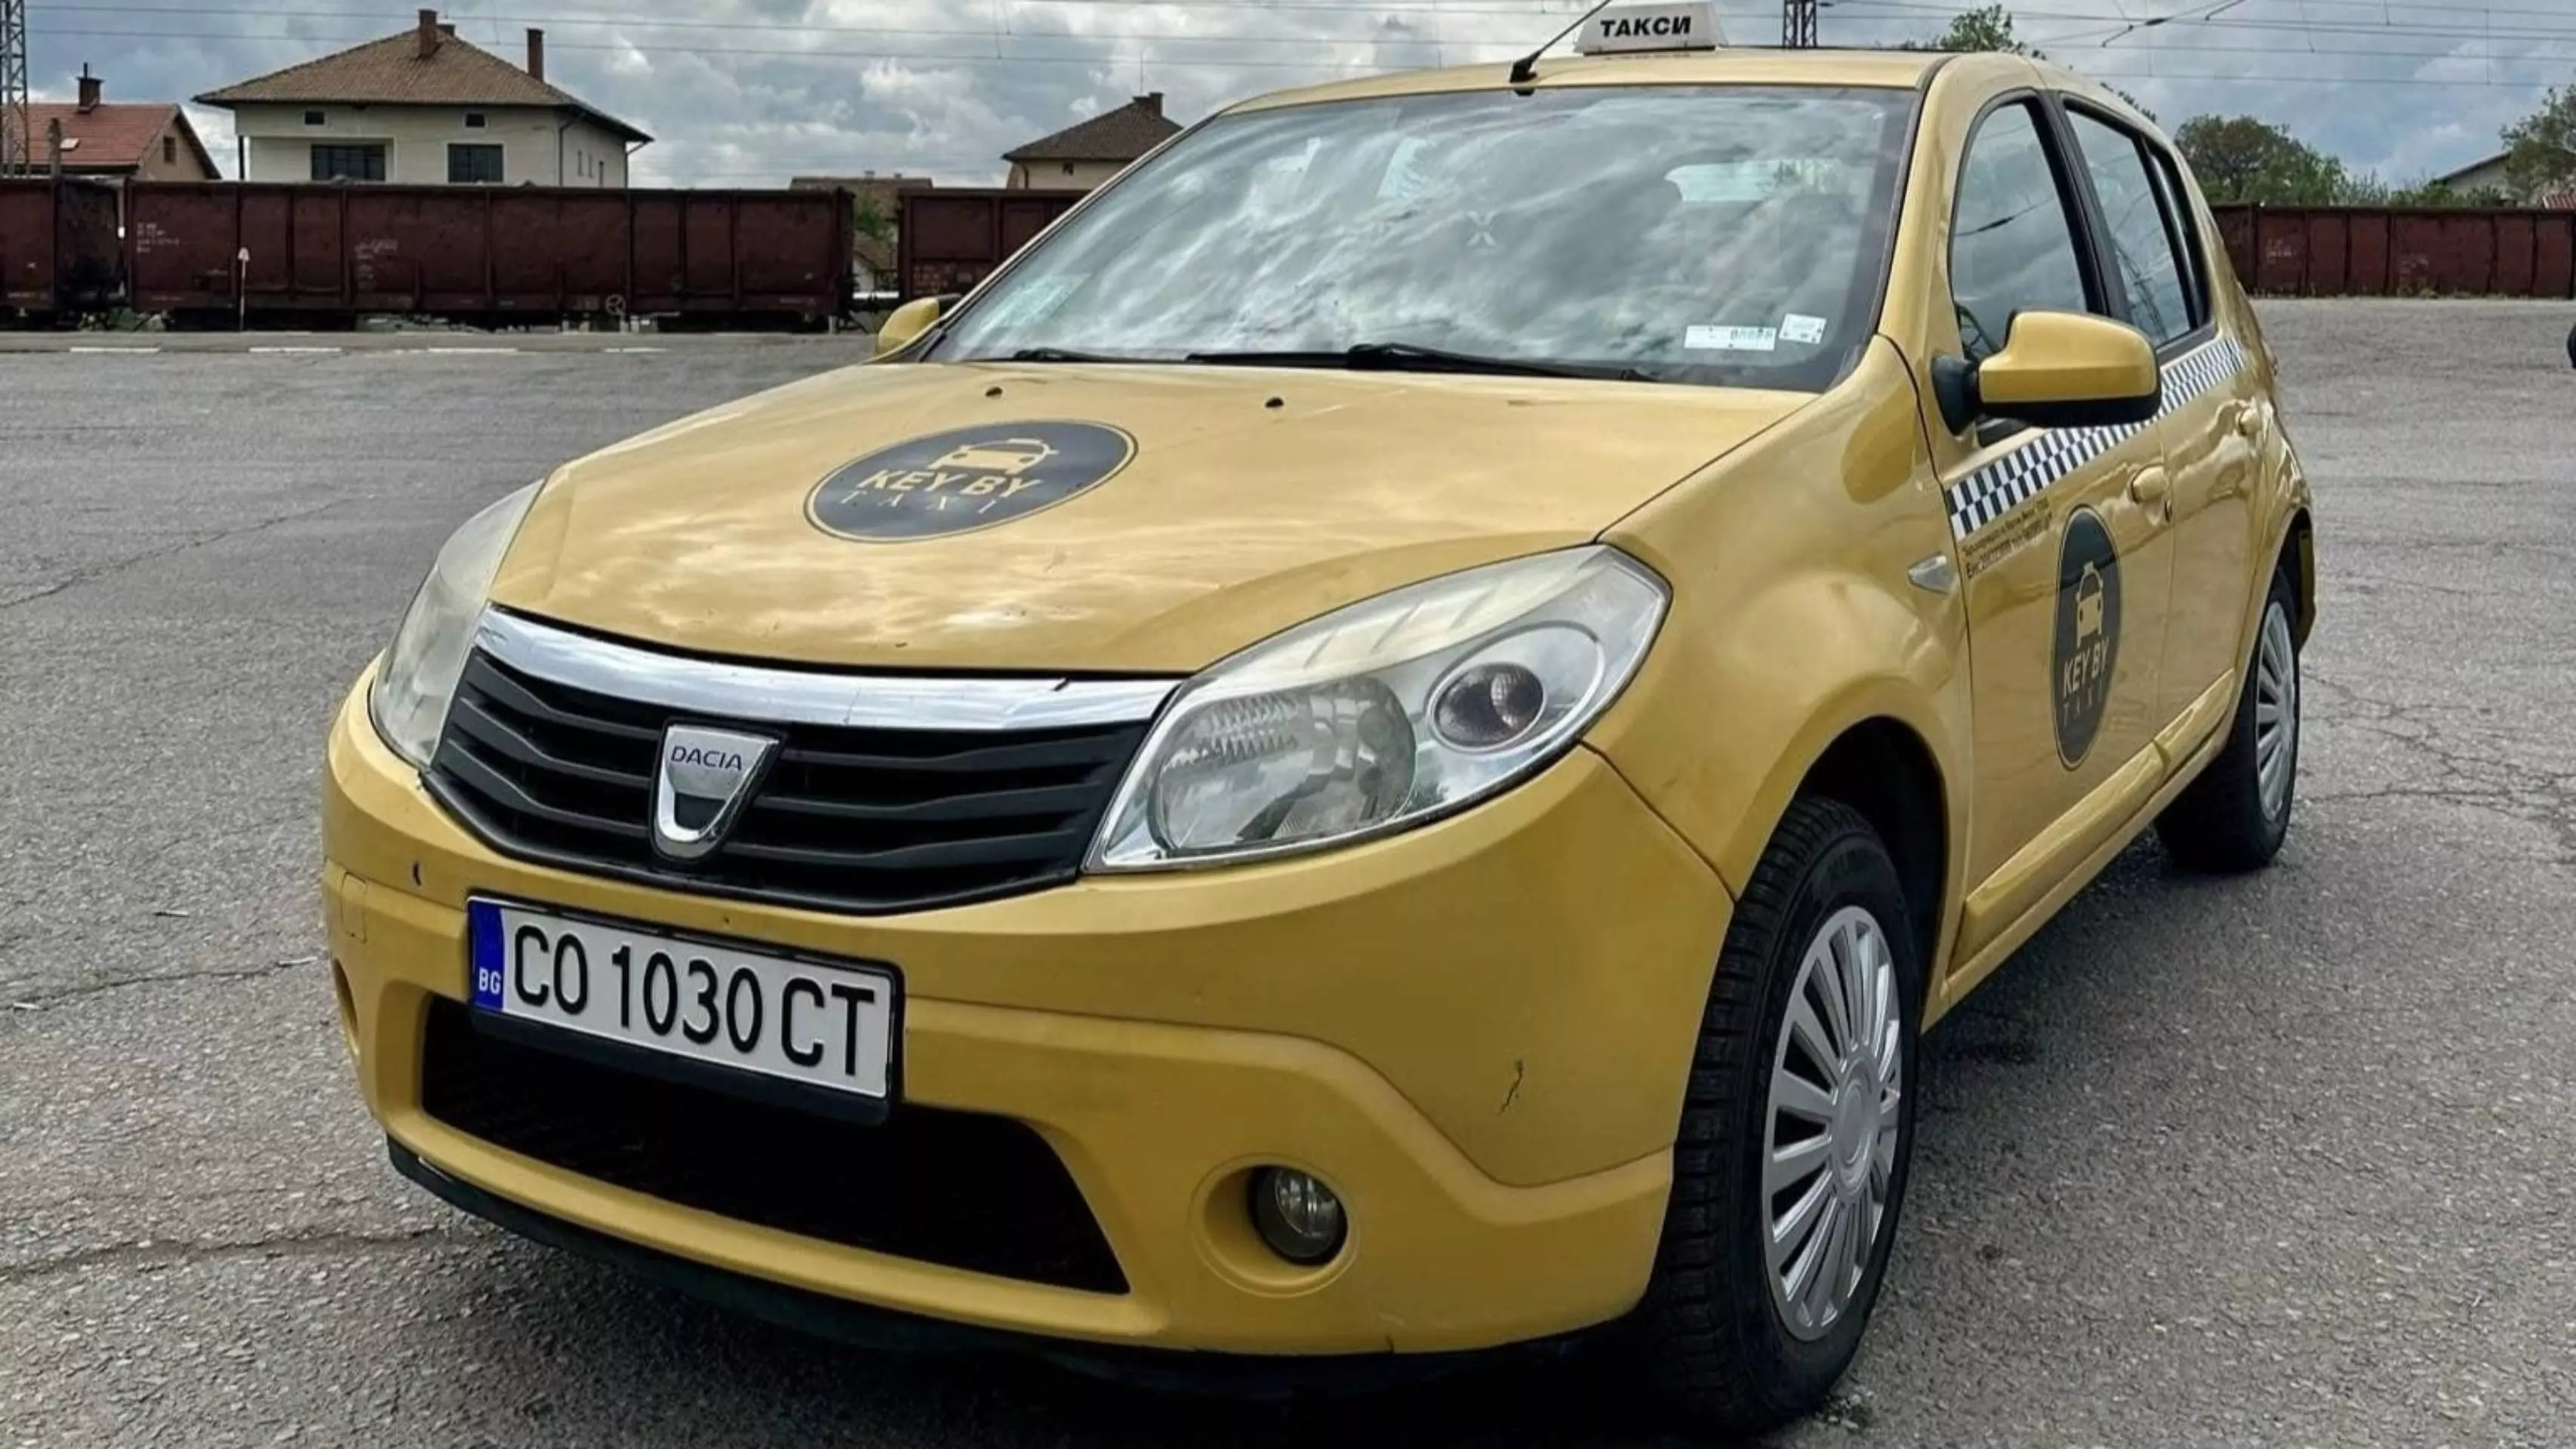 Първото лицензирано такси започва работа в Костинброд (СНИМКИ)